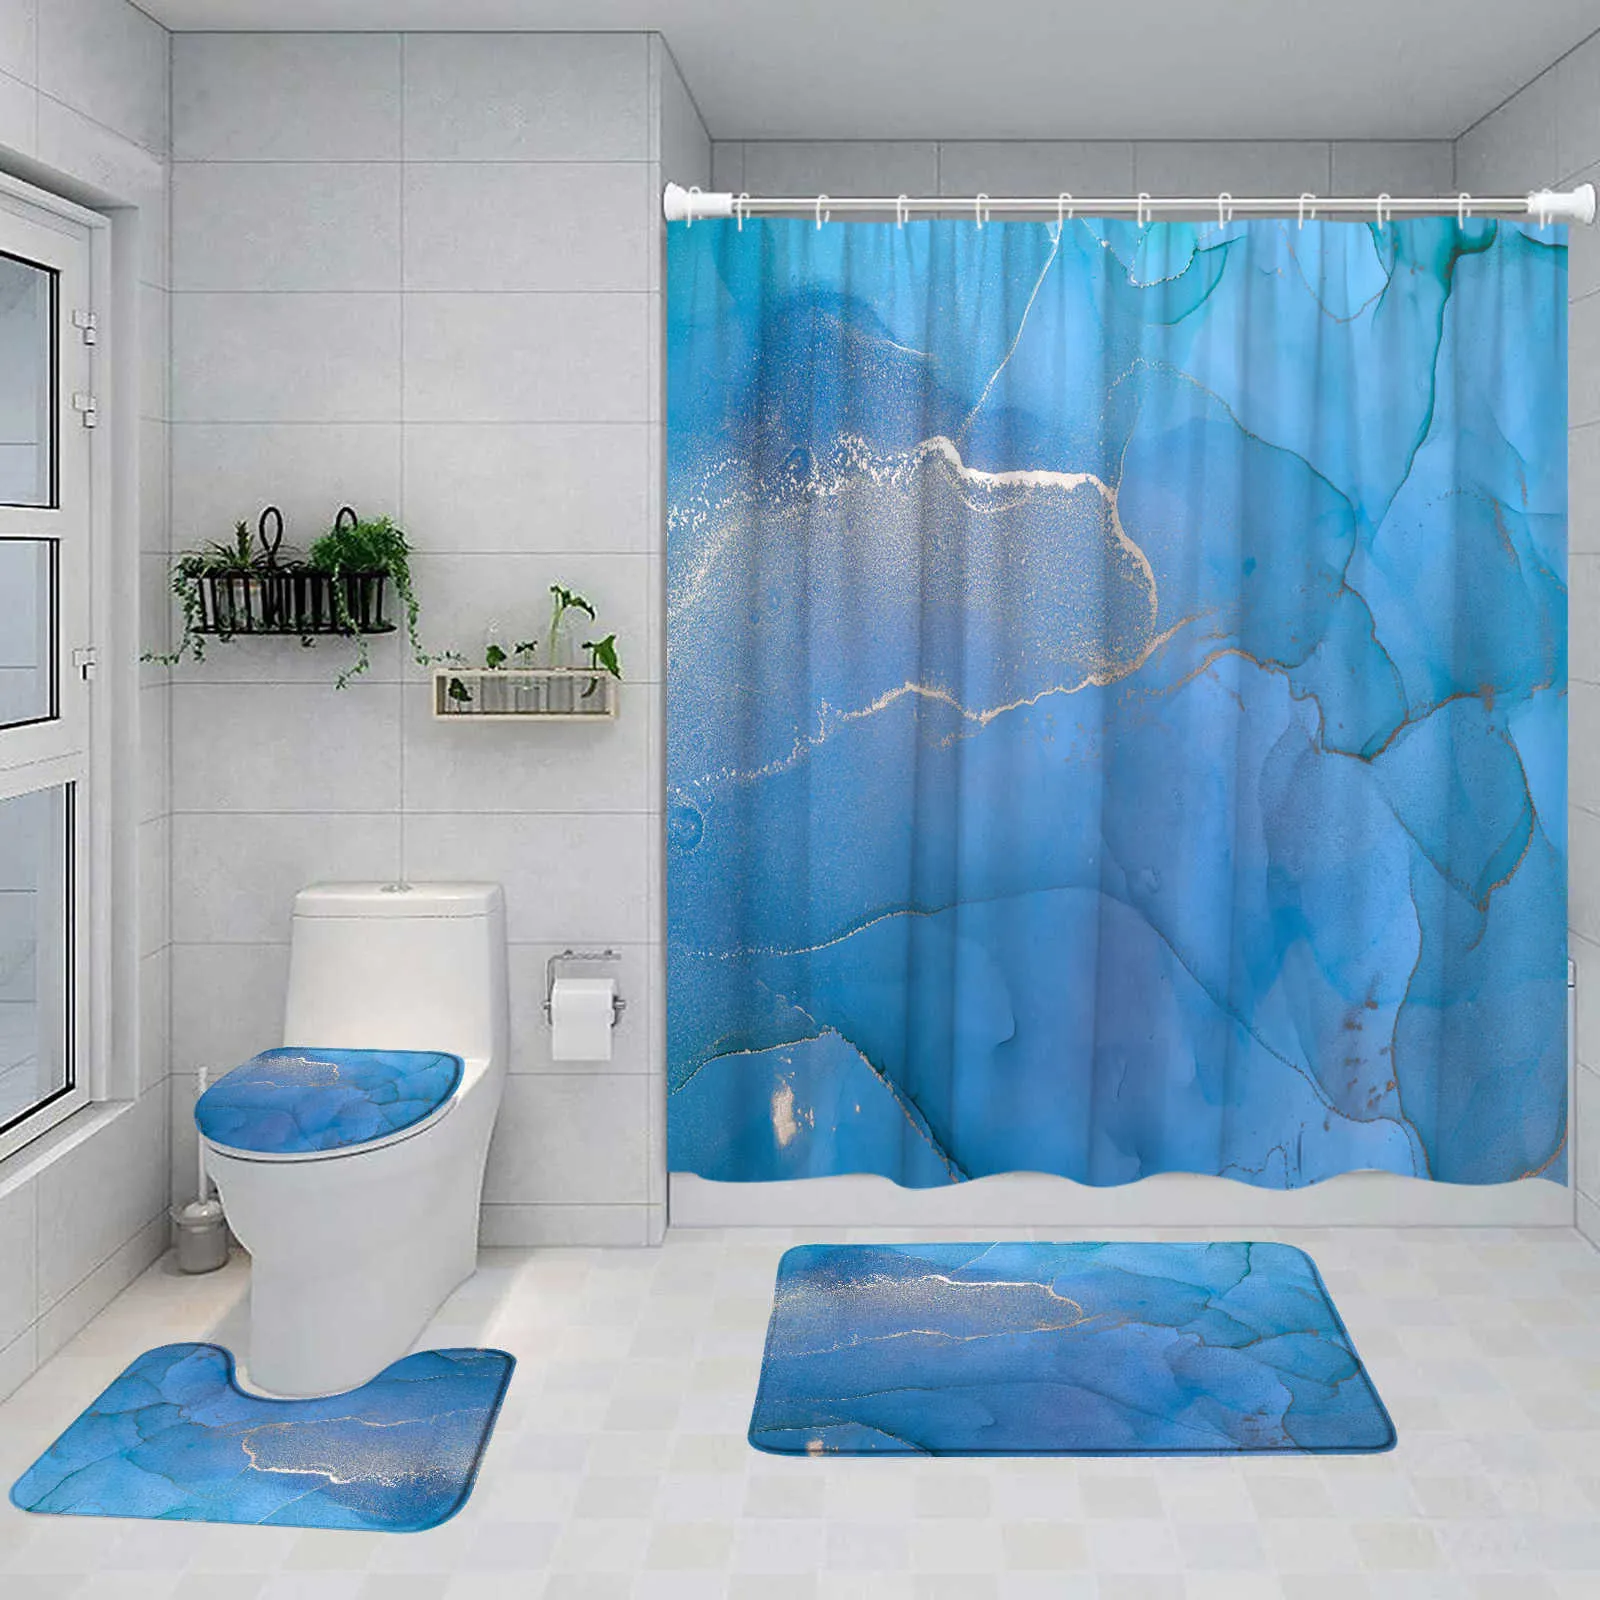 Prysznic Niebieski marmurowy zestaw zasłony prysznicowej ATTALIT Malowane nowoczesne wystrój łazienki dywan cokołów bez pośpiechu